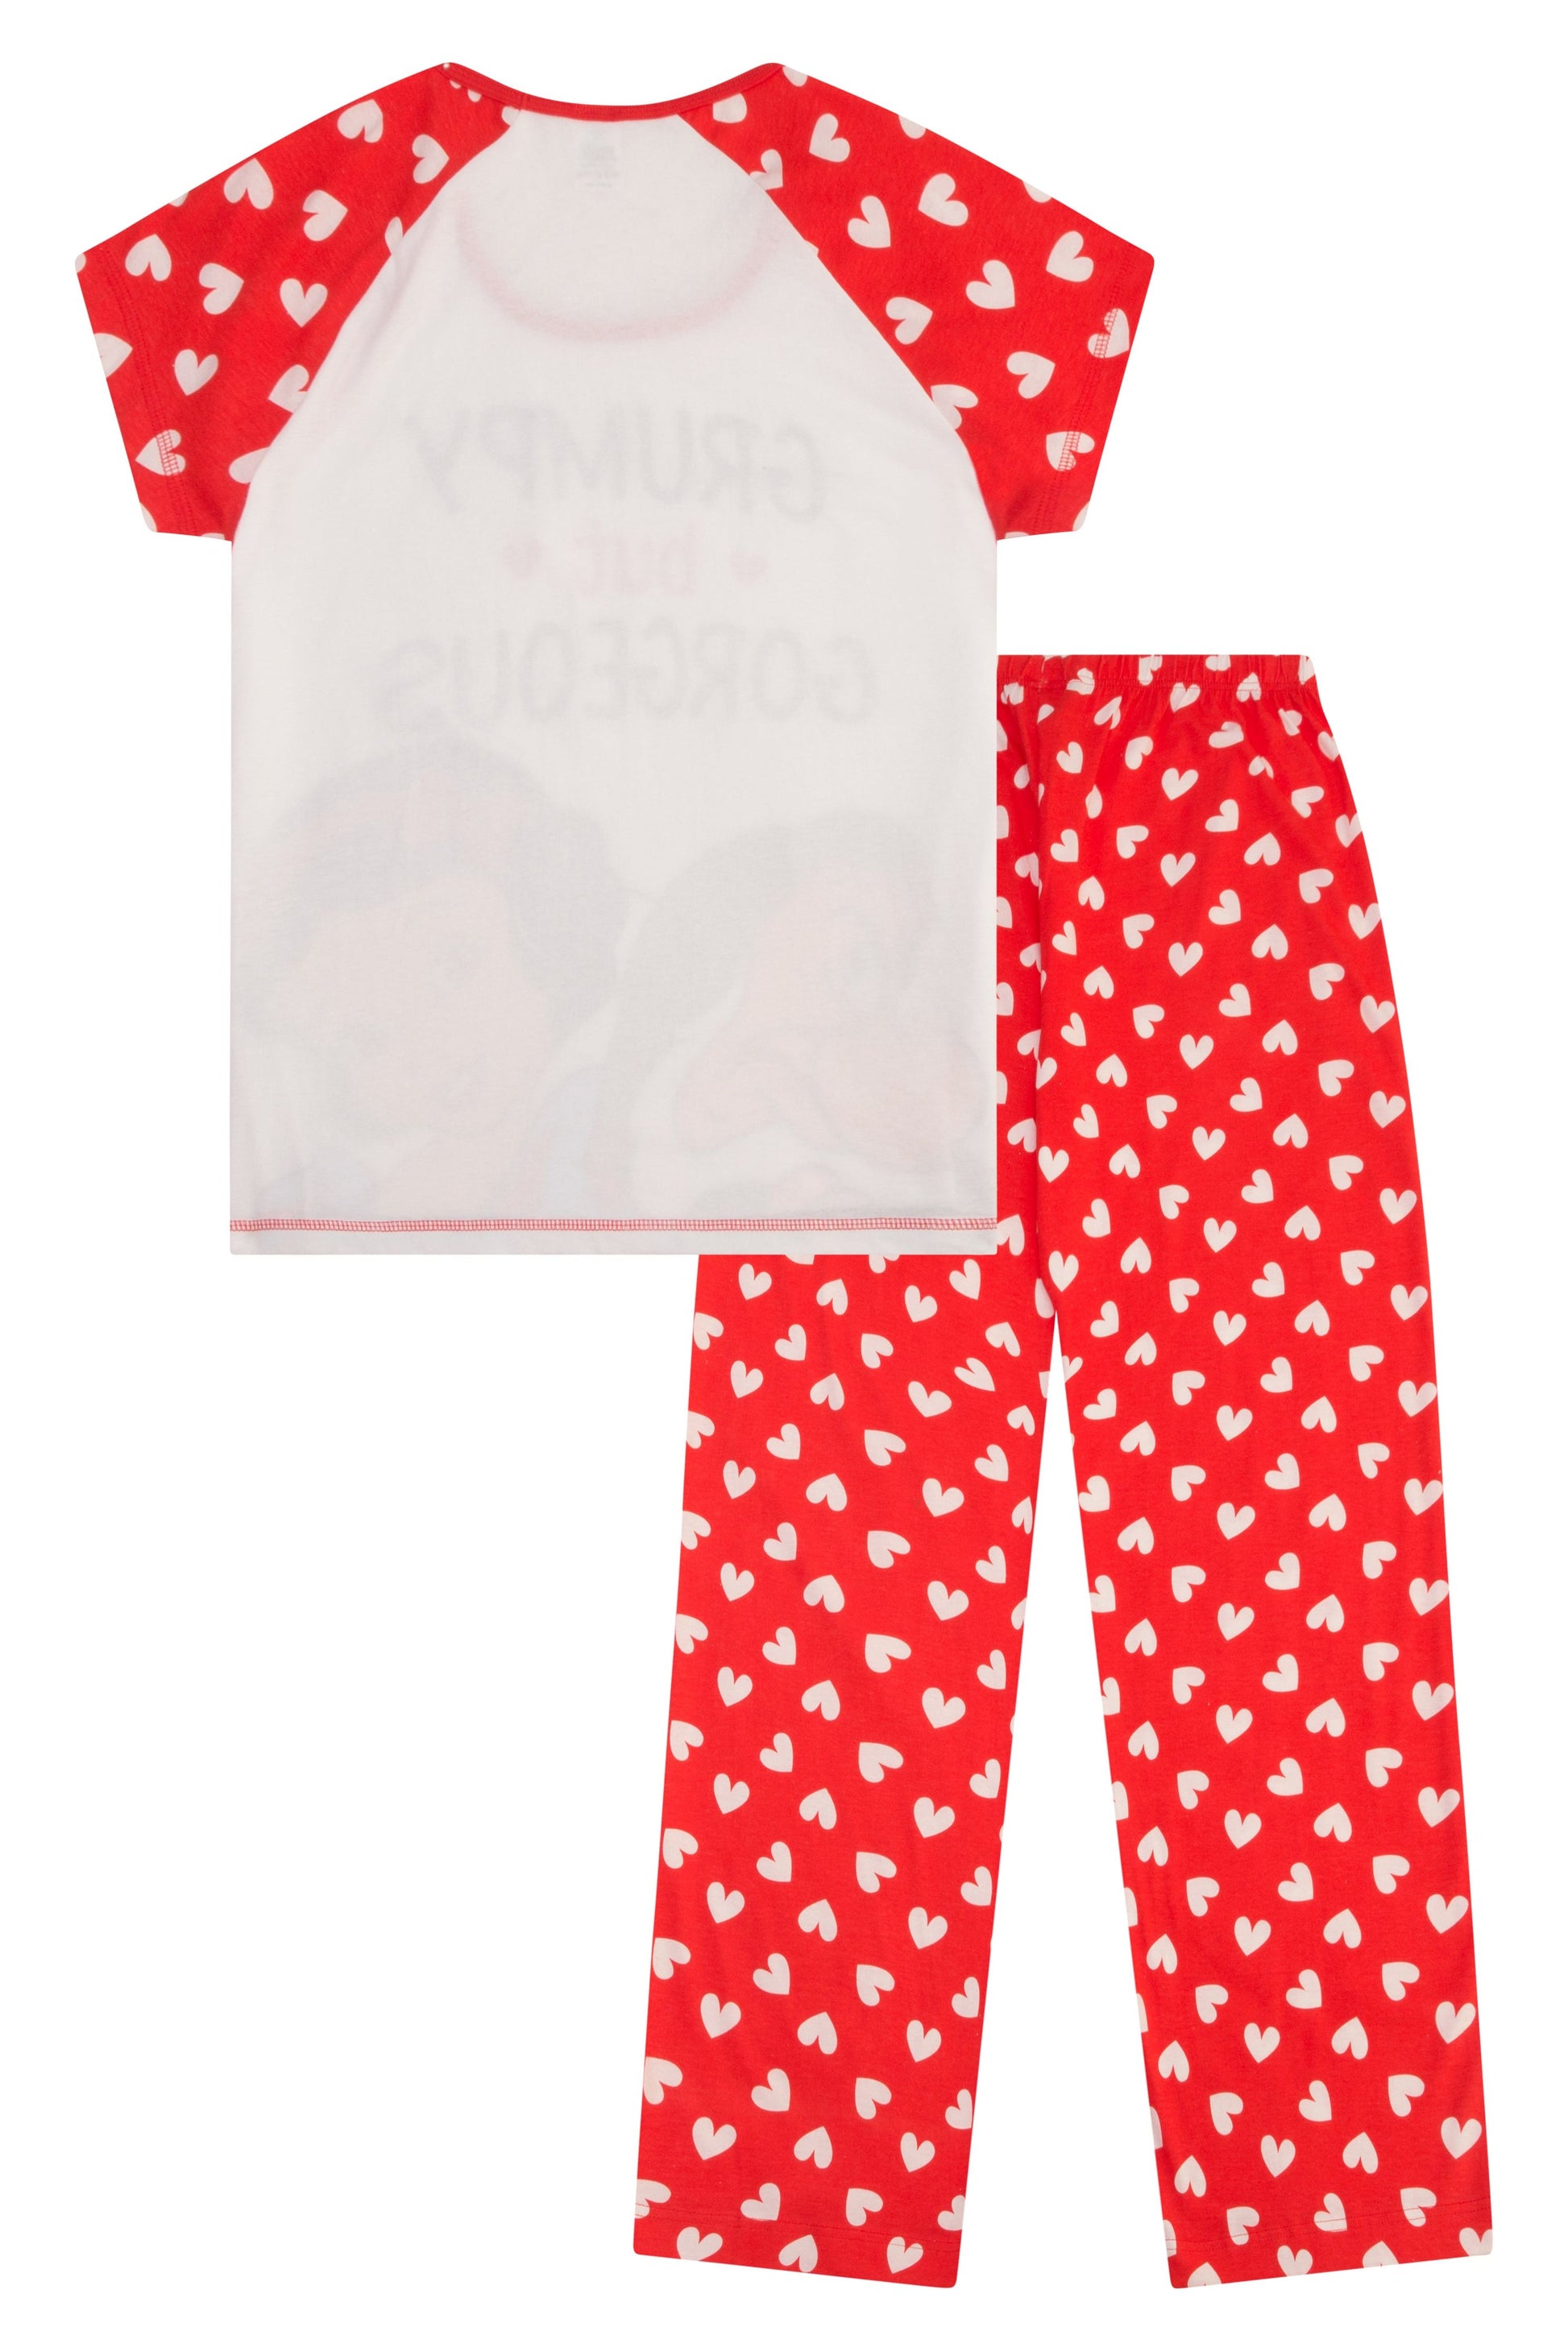 Ladies Snow White Long Pyjamas - Pyjamas.com